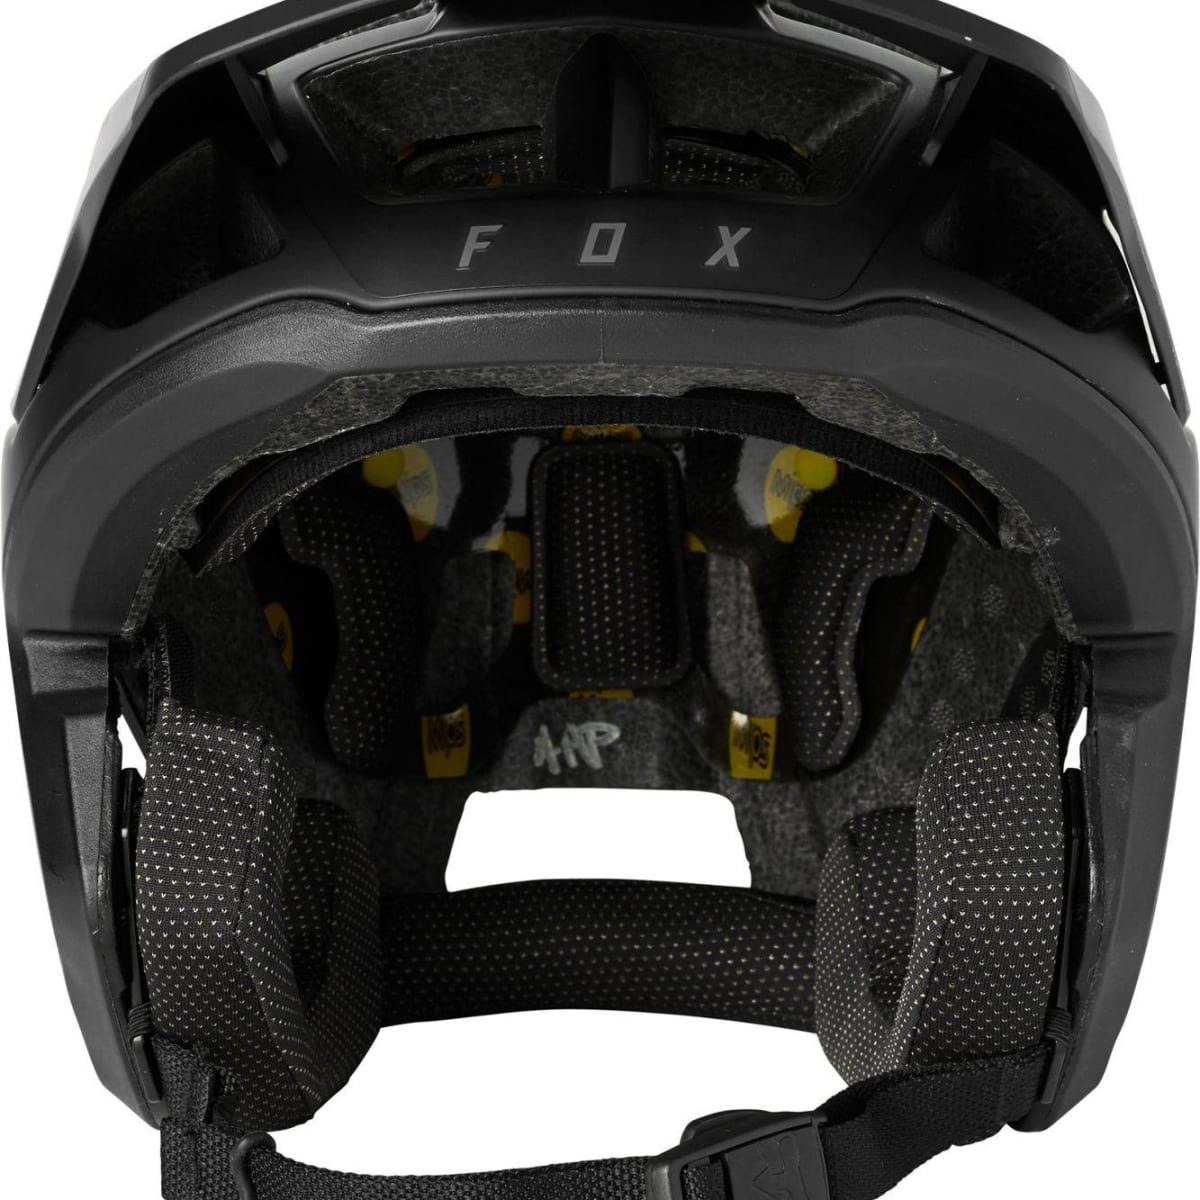 Fox dropframe pro Blk 2021 Casco - Tienda Ride